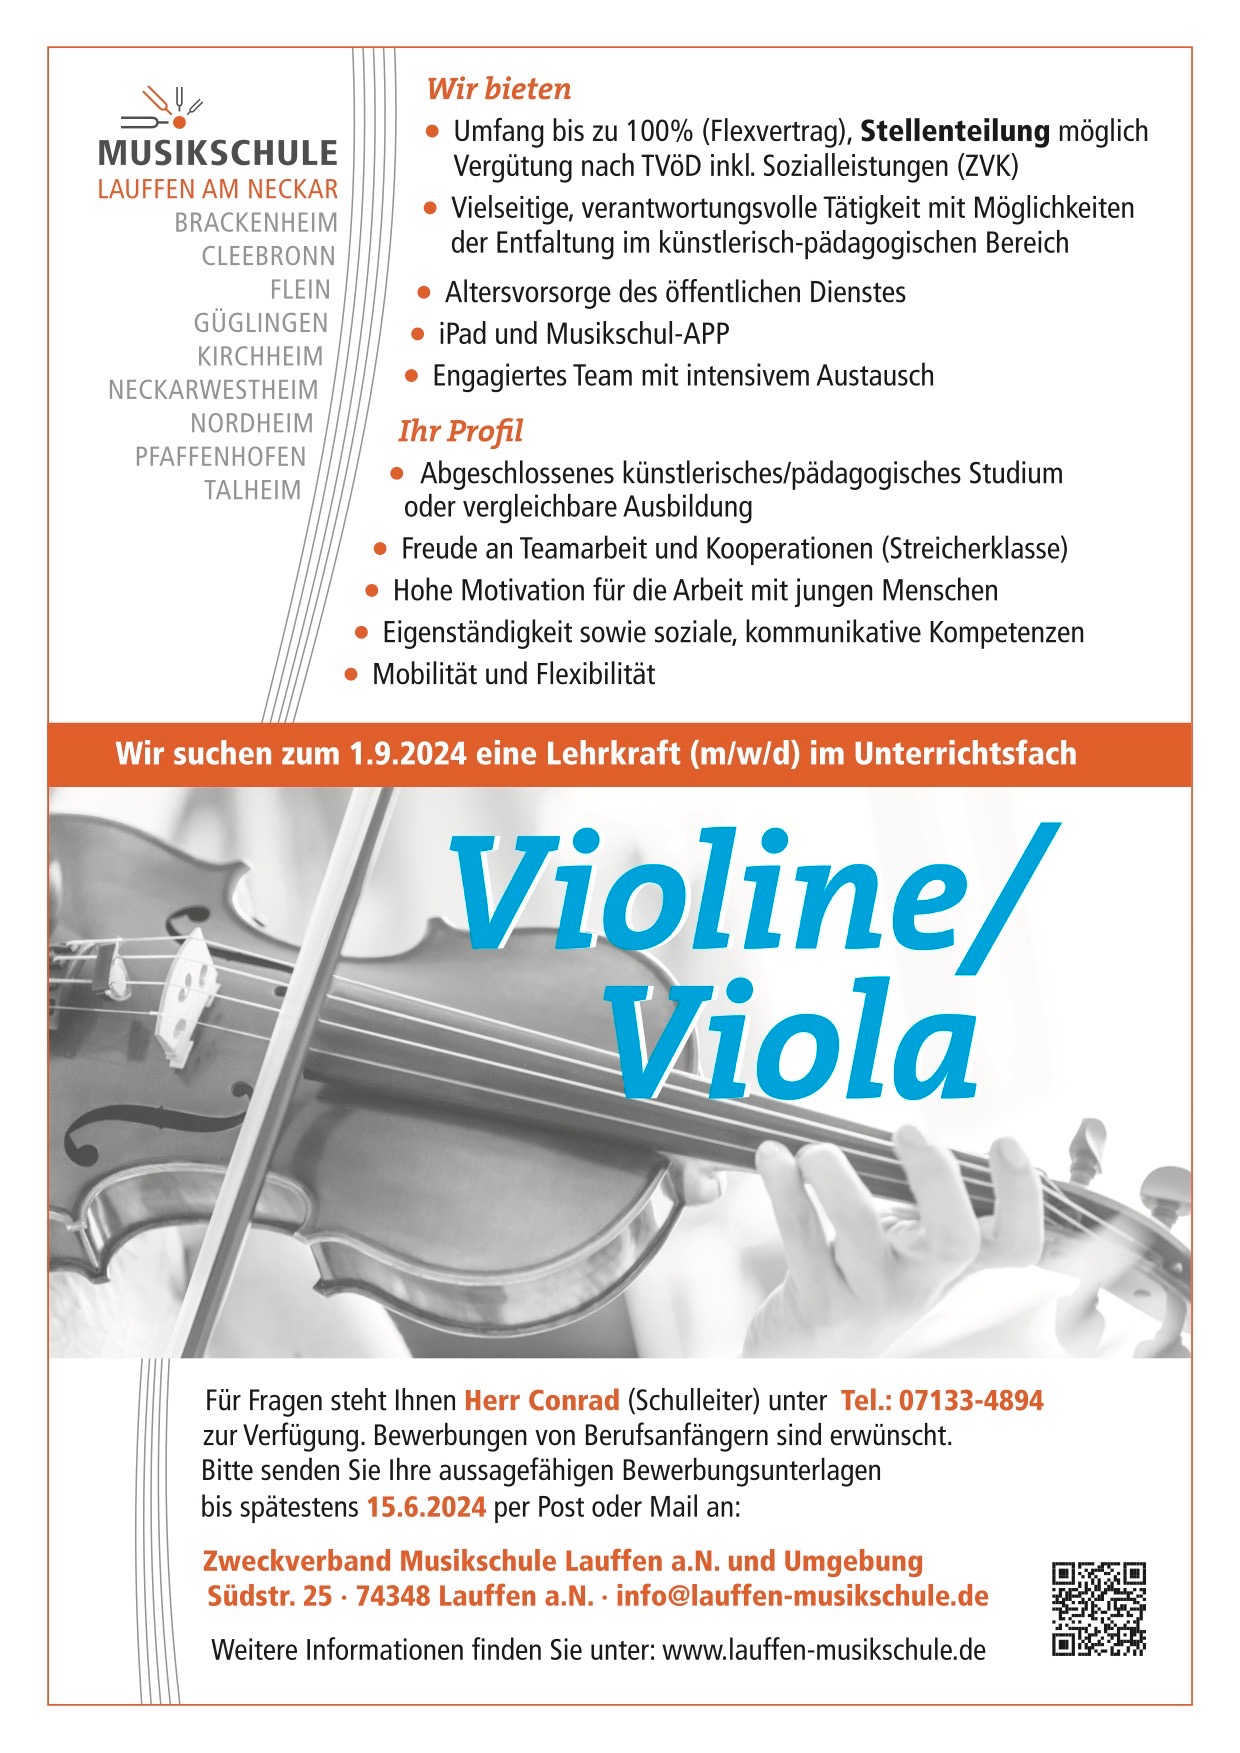 MS_Lauffen_Stelle_Violine_Viola.jpg